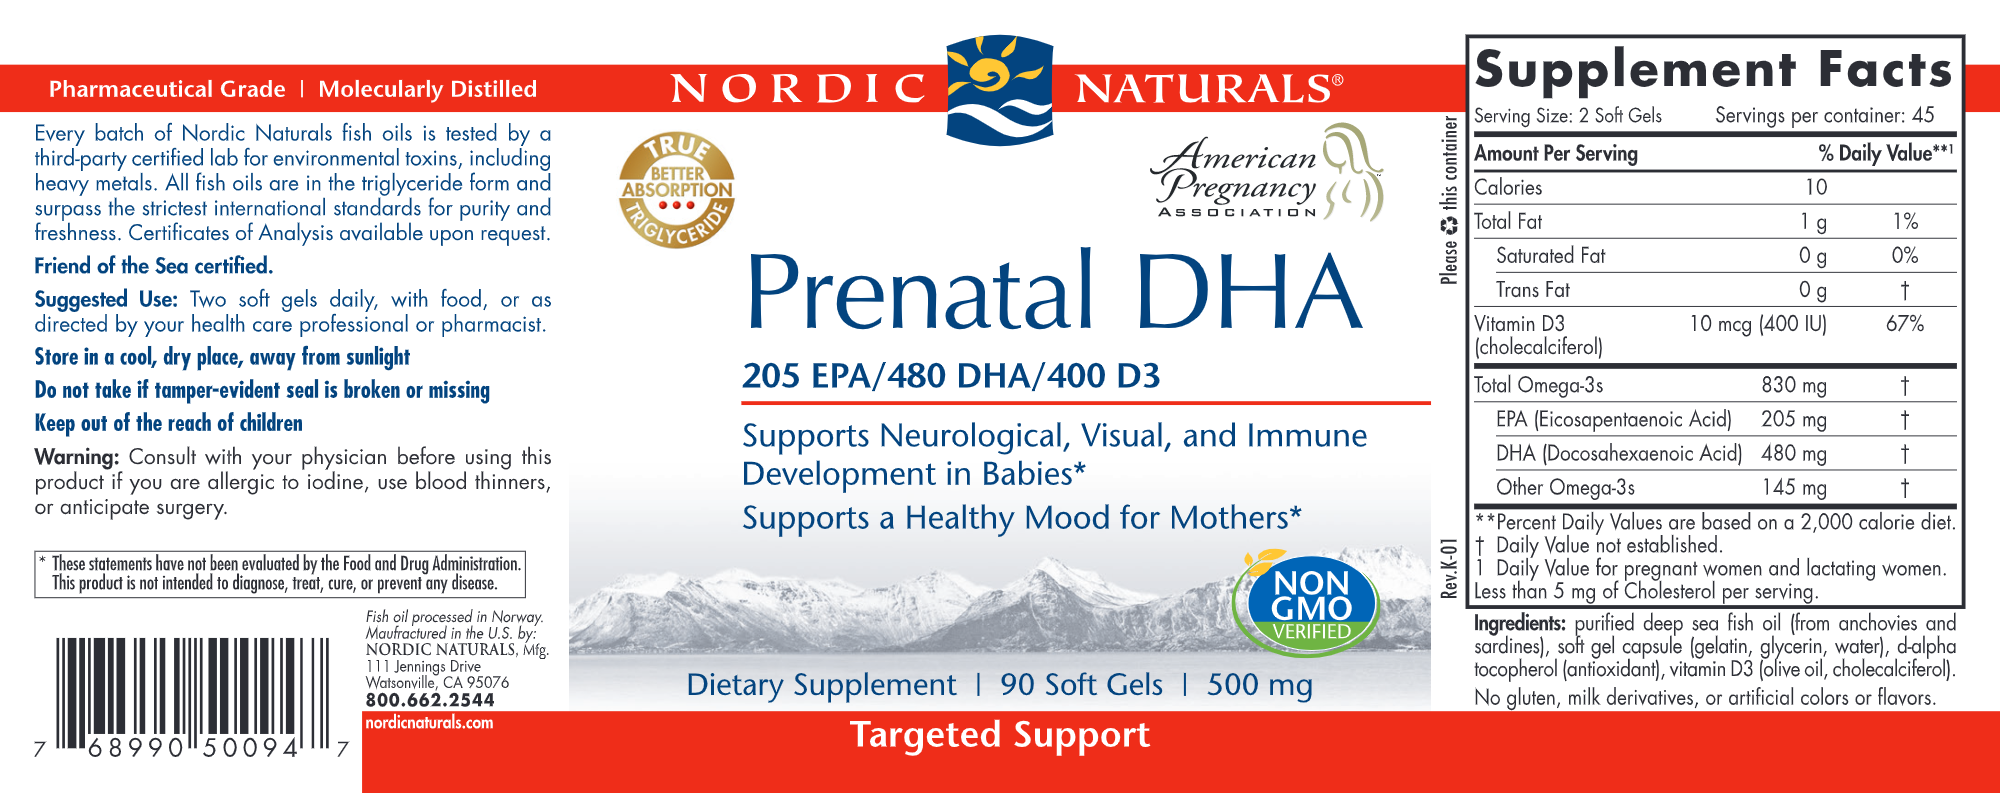 Prenatal DHA 500 mg